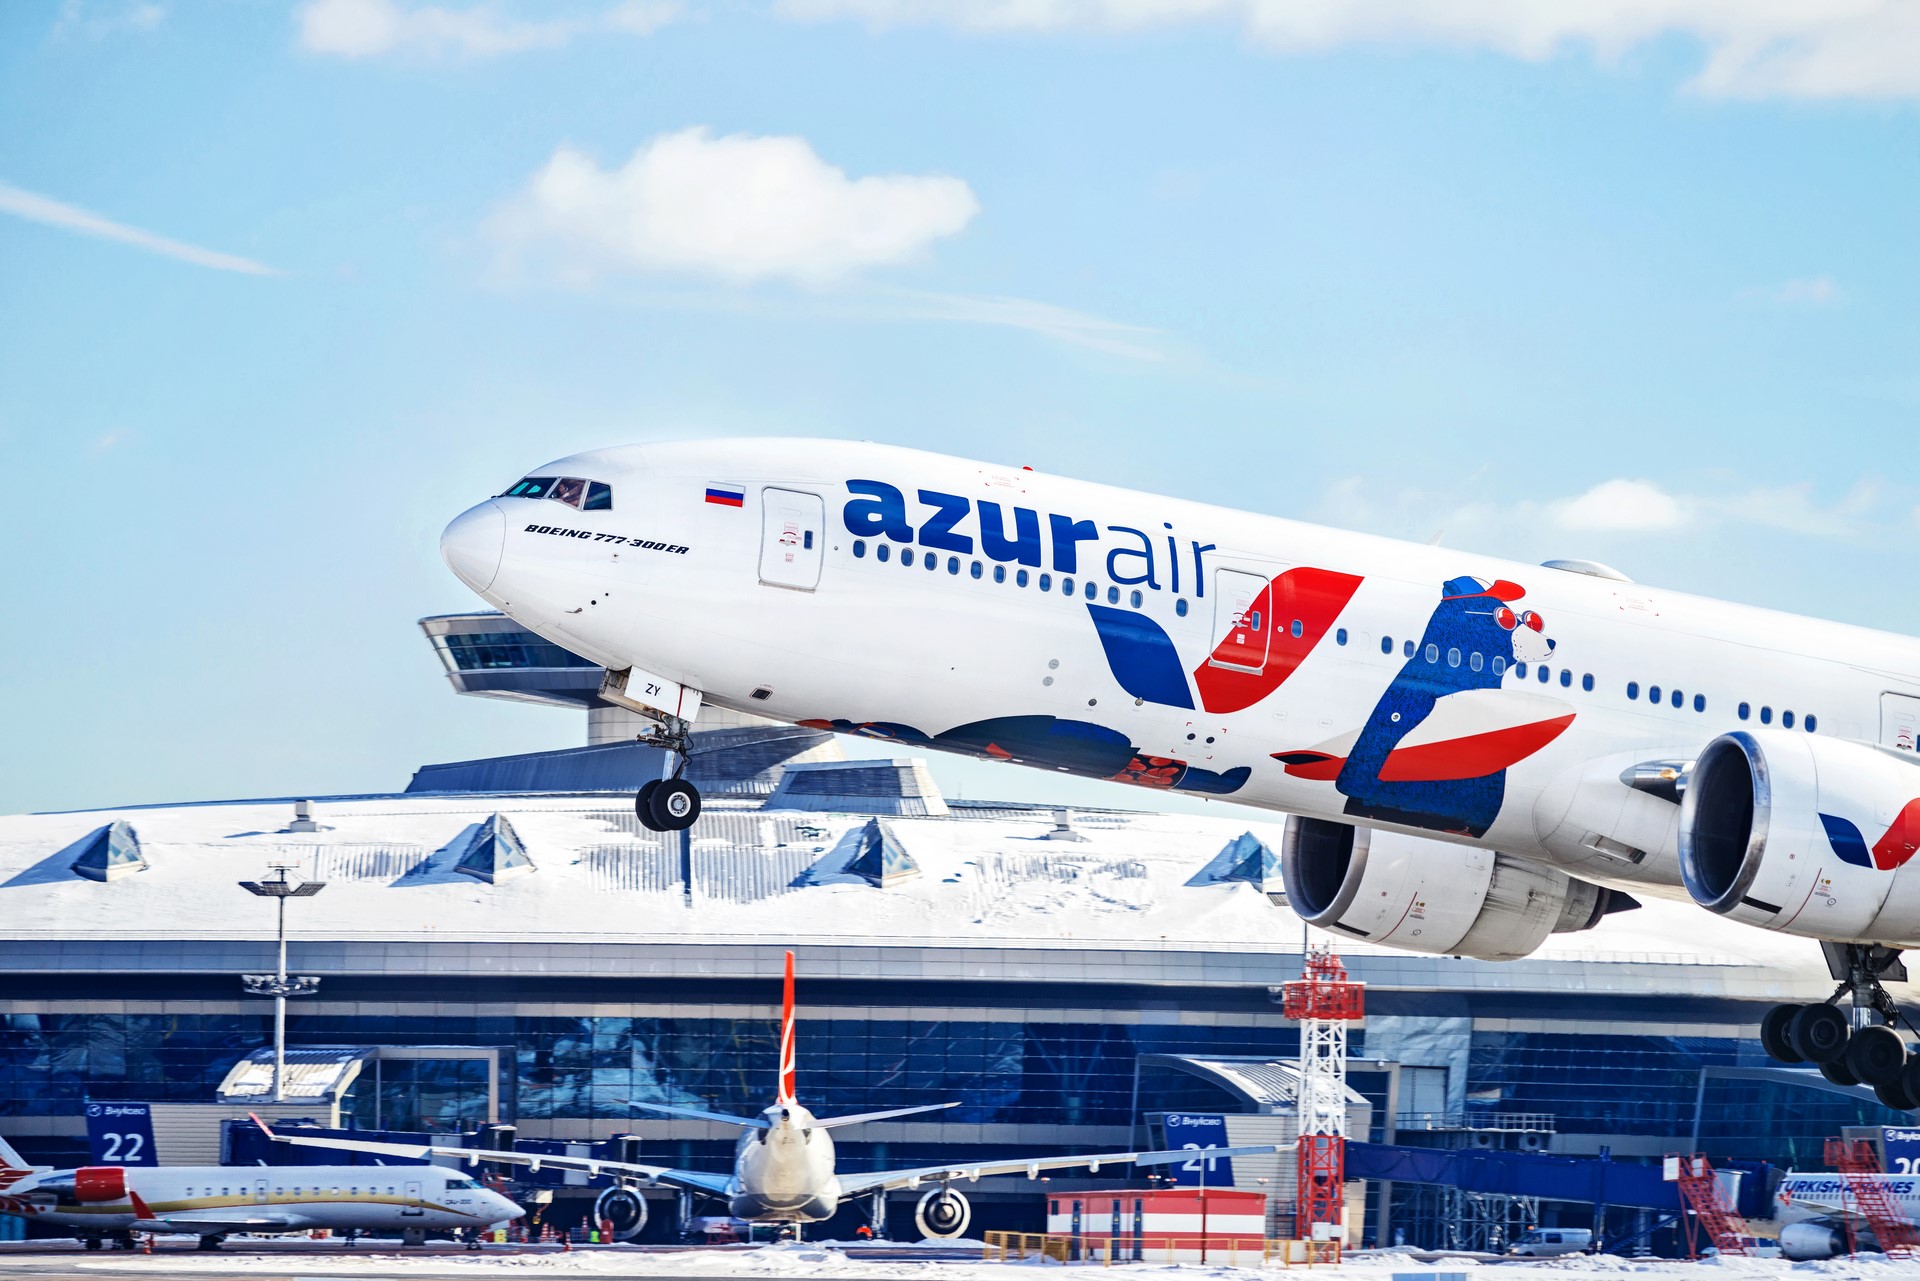 AZUR air, Новости, 16 января 2020, AZUR air увеличила перевозки в новогодние праздники, сохранив высокую регулярность полетов